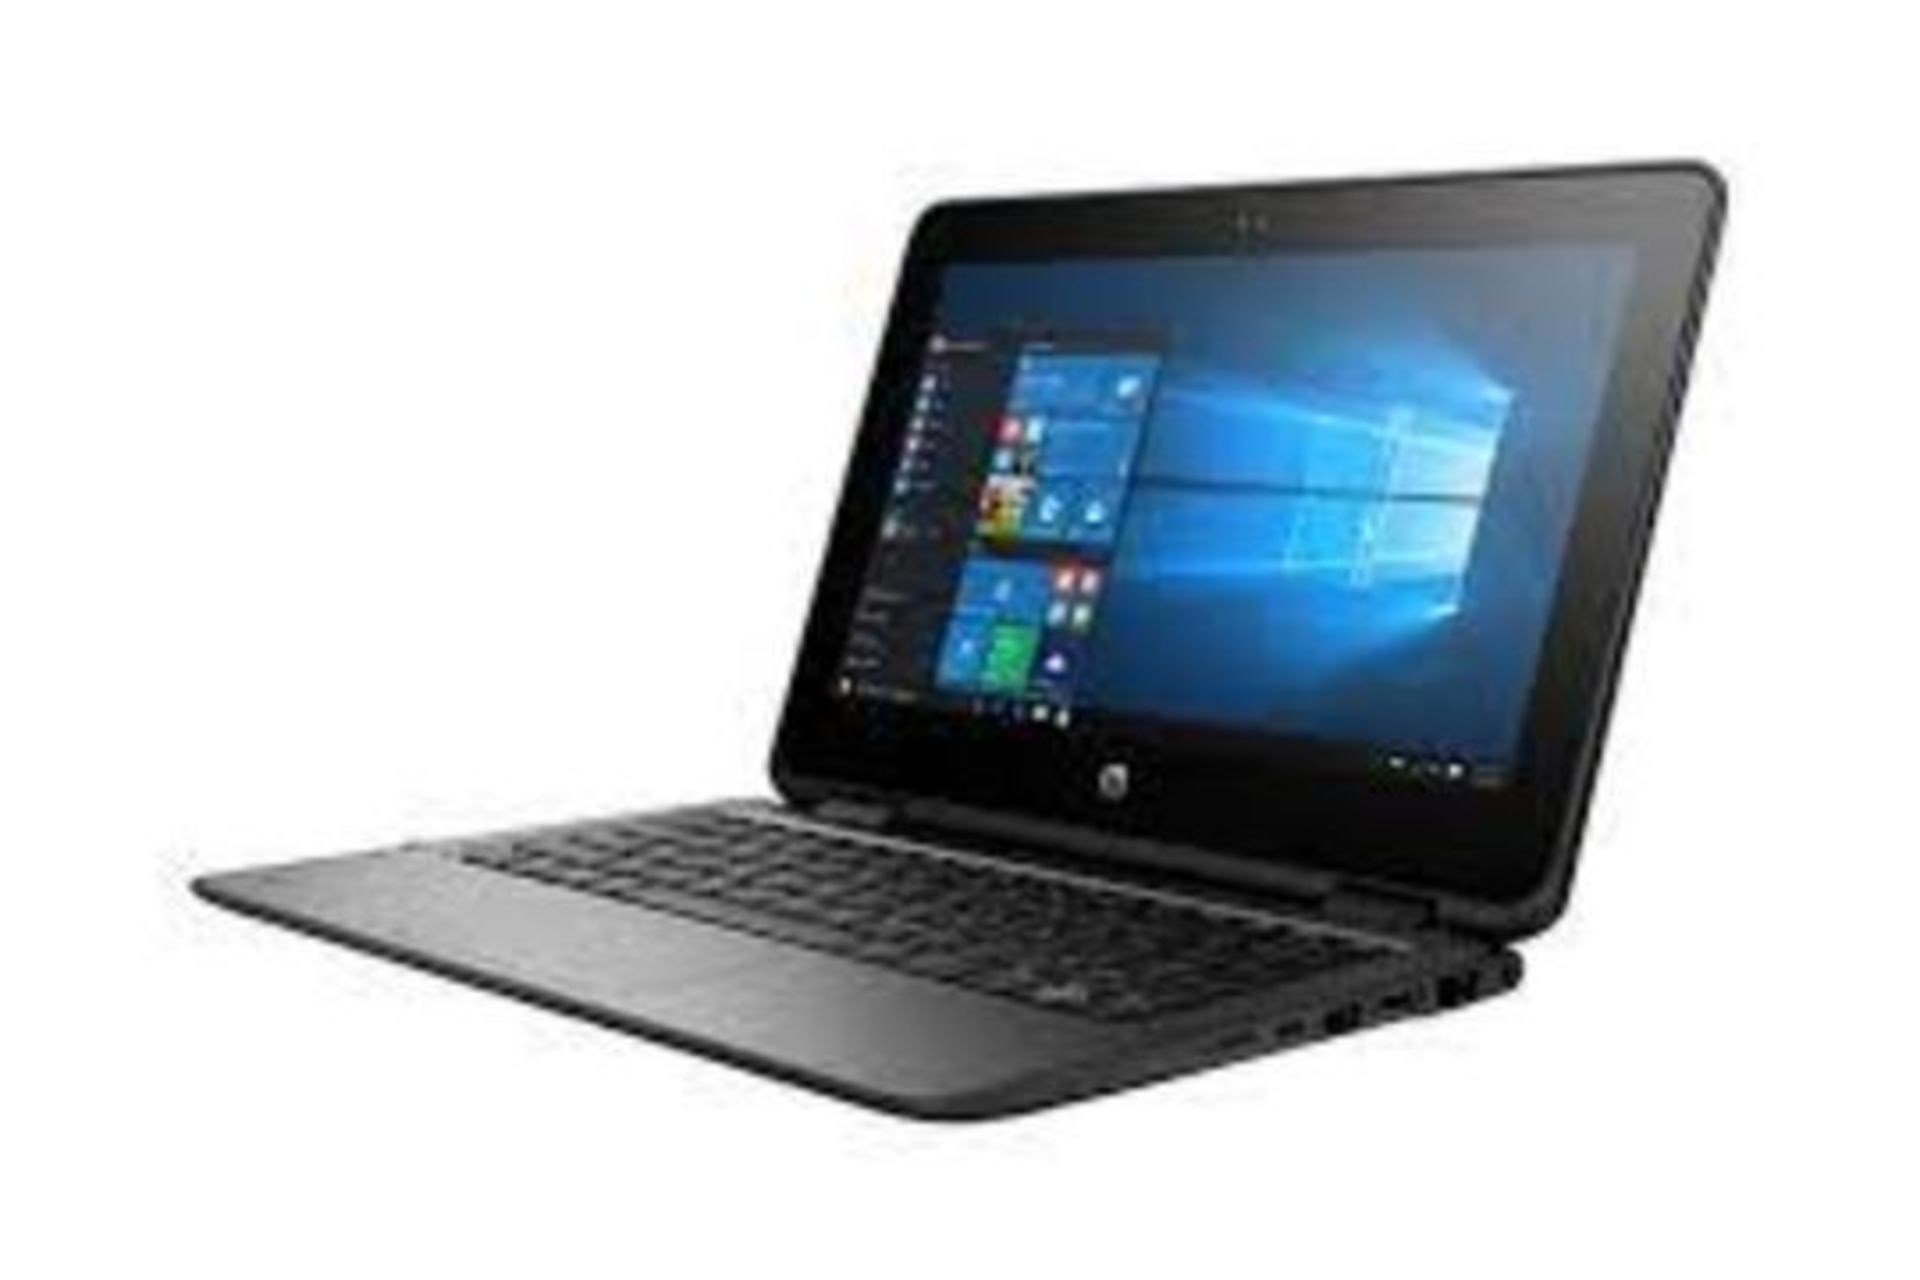 HP ProBook x360 11 G1 EE 2 IN 1 Laptop (Pentium Quad Core/4 GB/128 GB SSD) RRP £450.